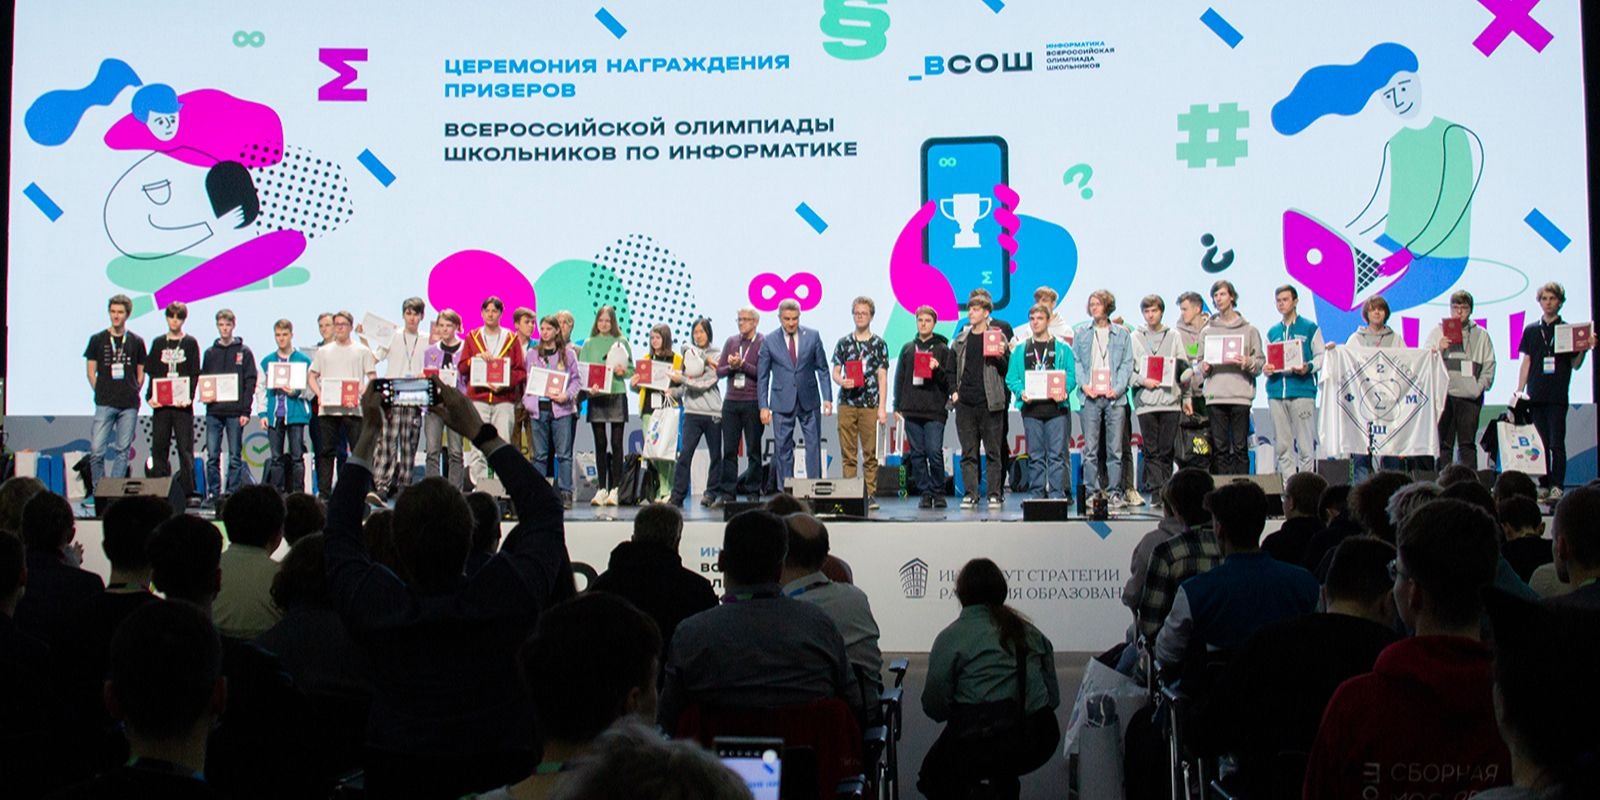 На Всероссийской олимпиаде по информатике победили школьники из Москвы